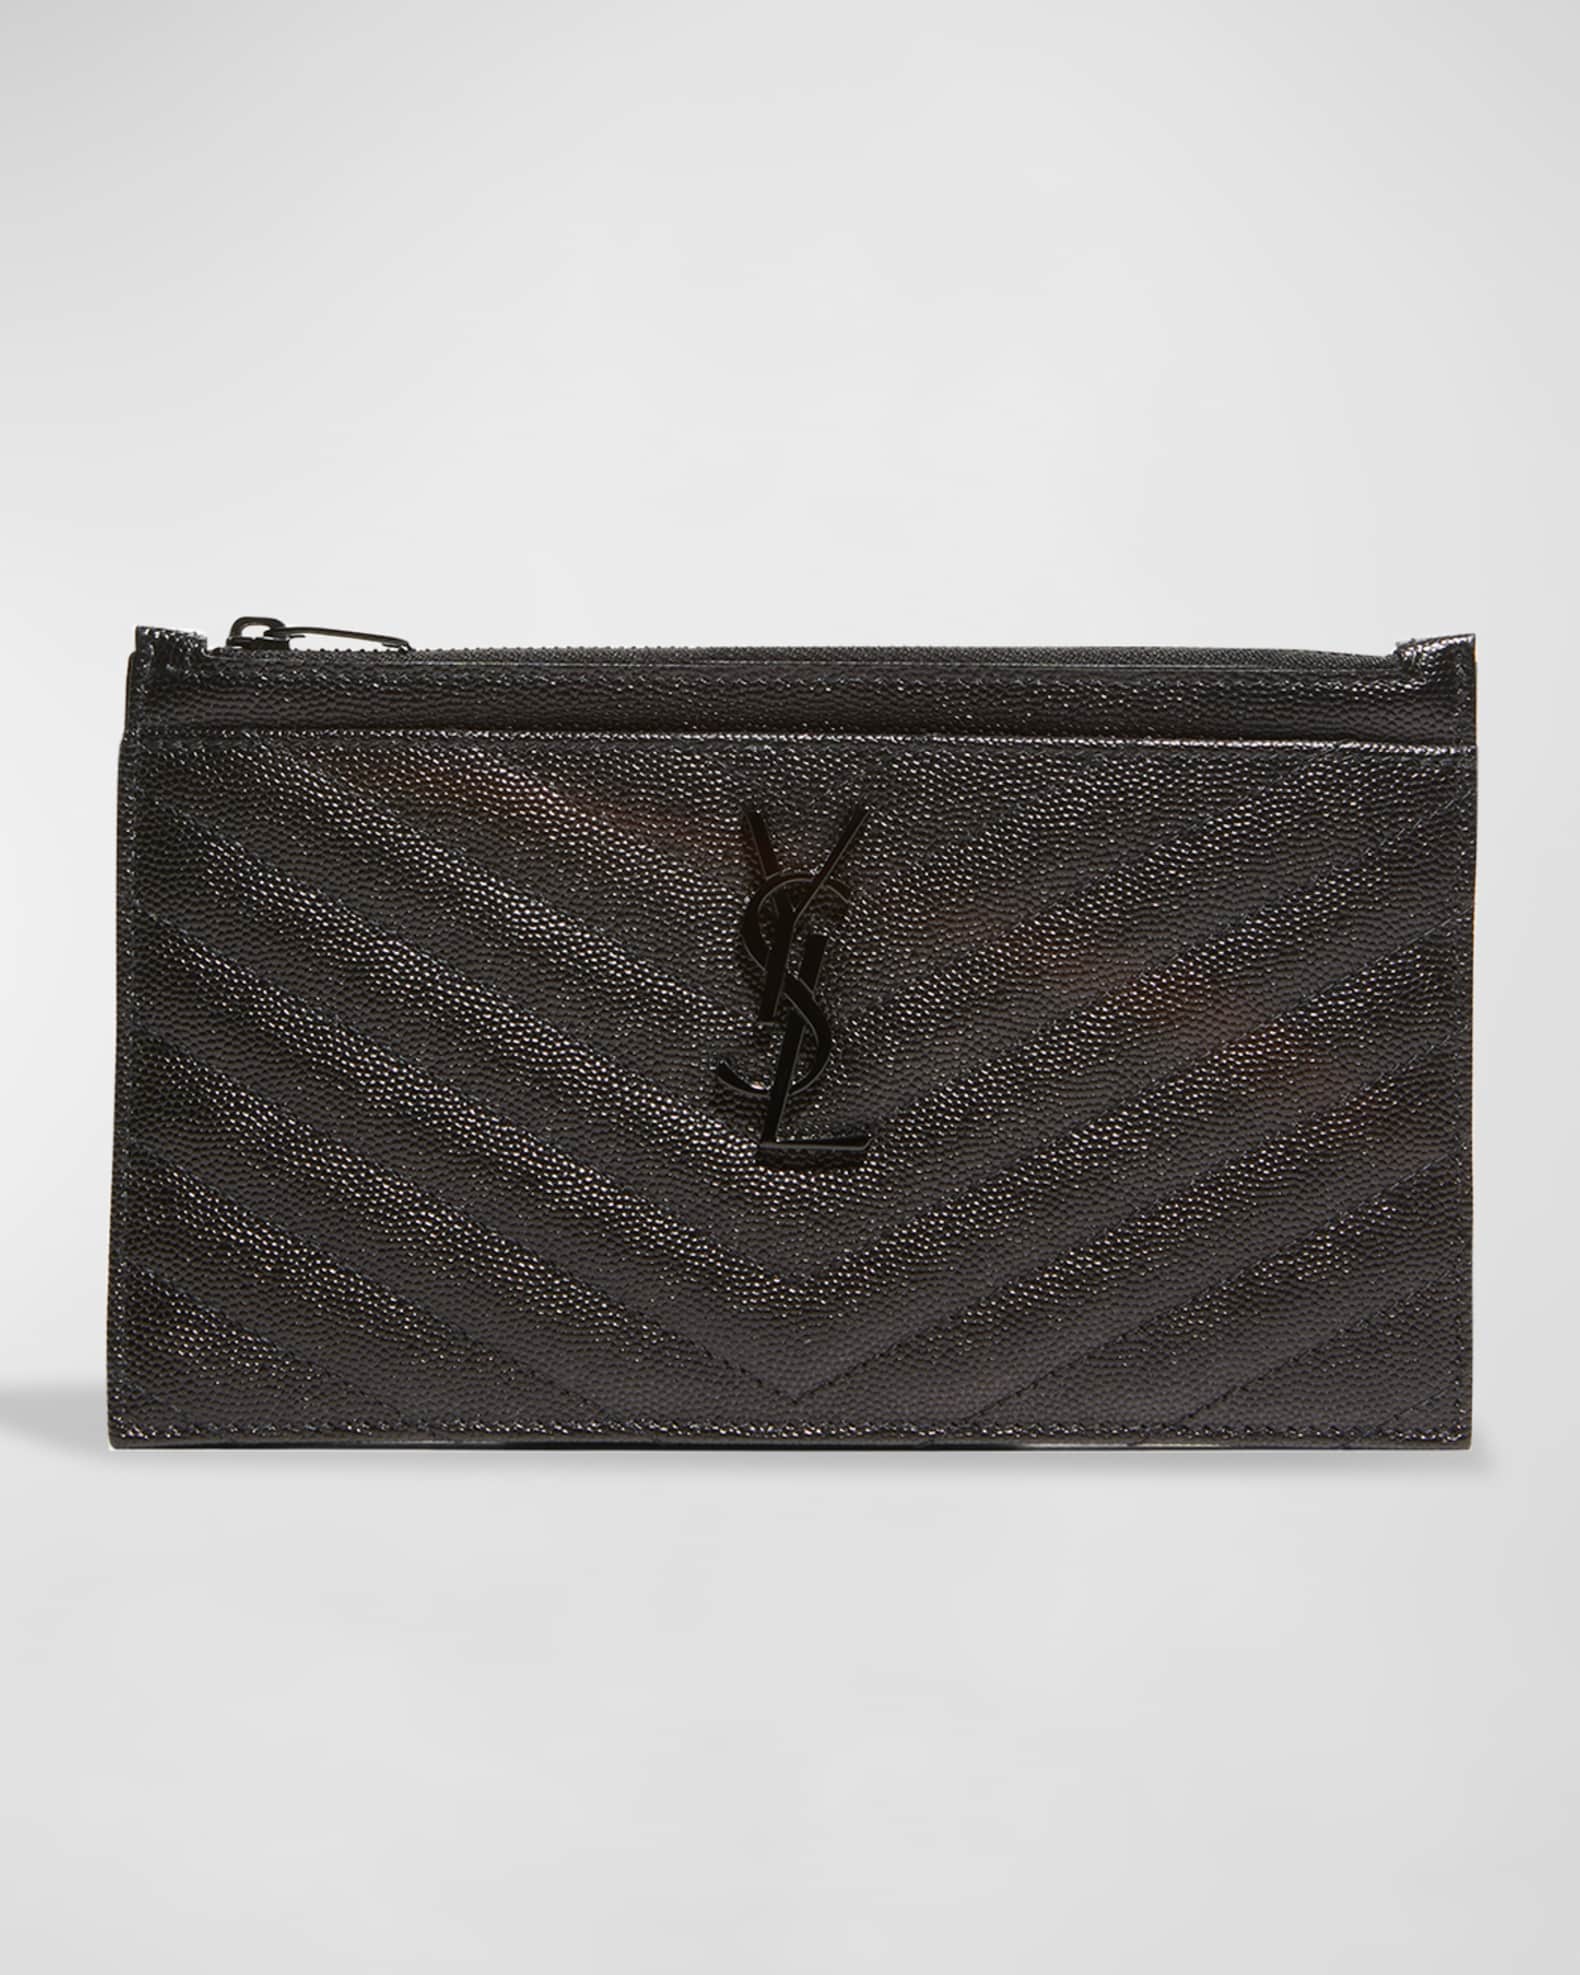 Yves Saint Laurent Vintage - Monogram Bill Pouch - Black - Leather